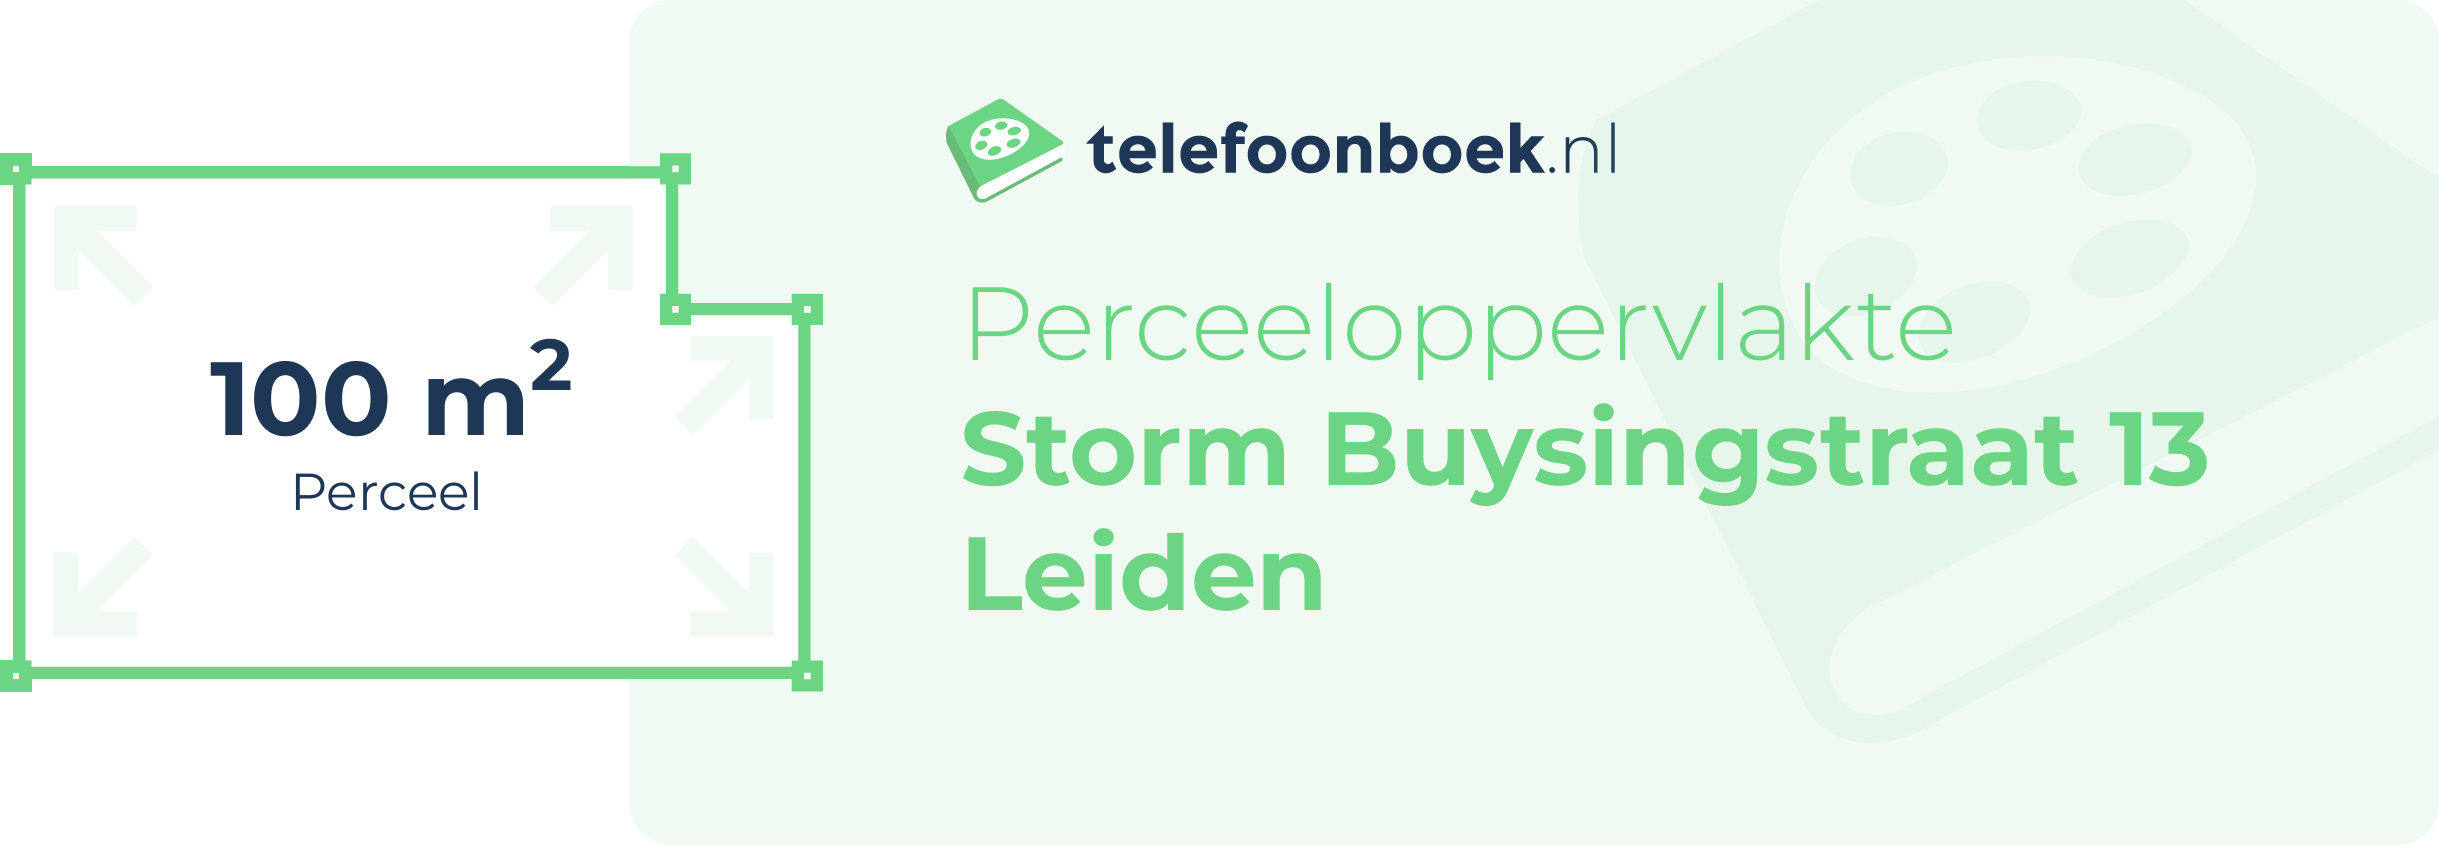 Perceeloppervlakte Storm Buysingstraat 13 Leiden